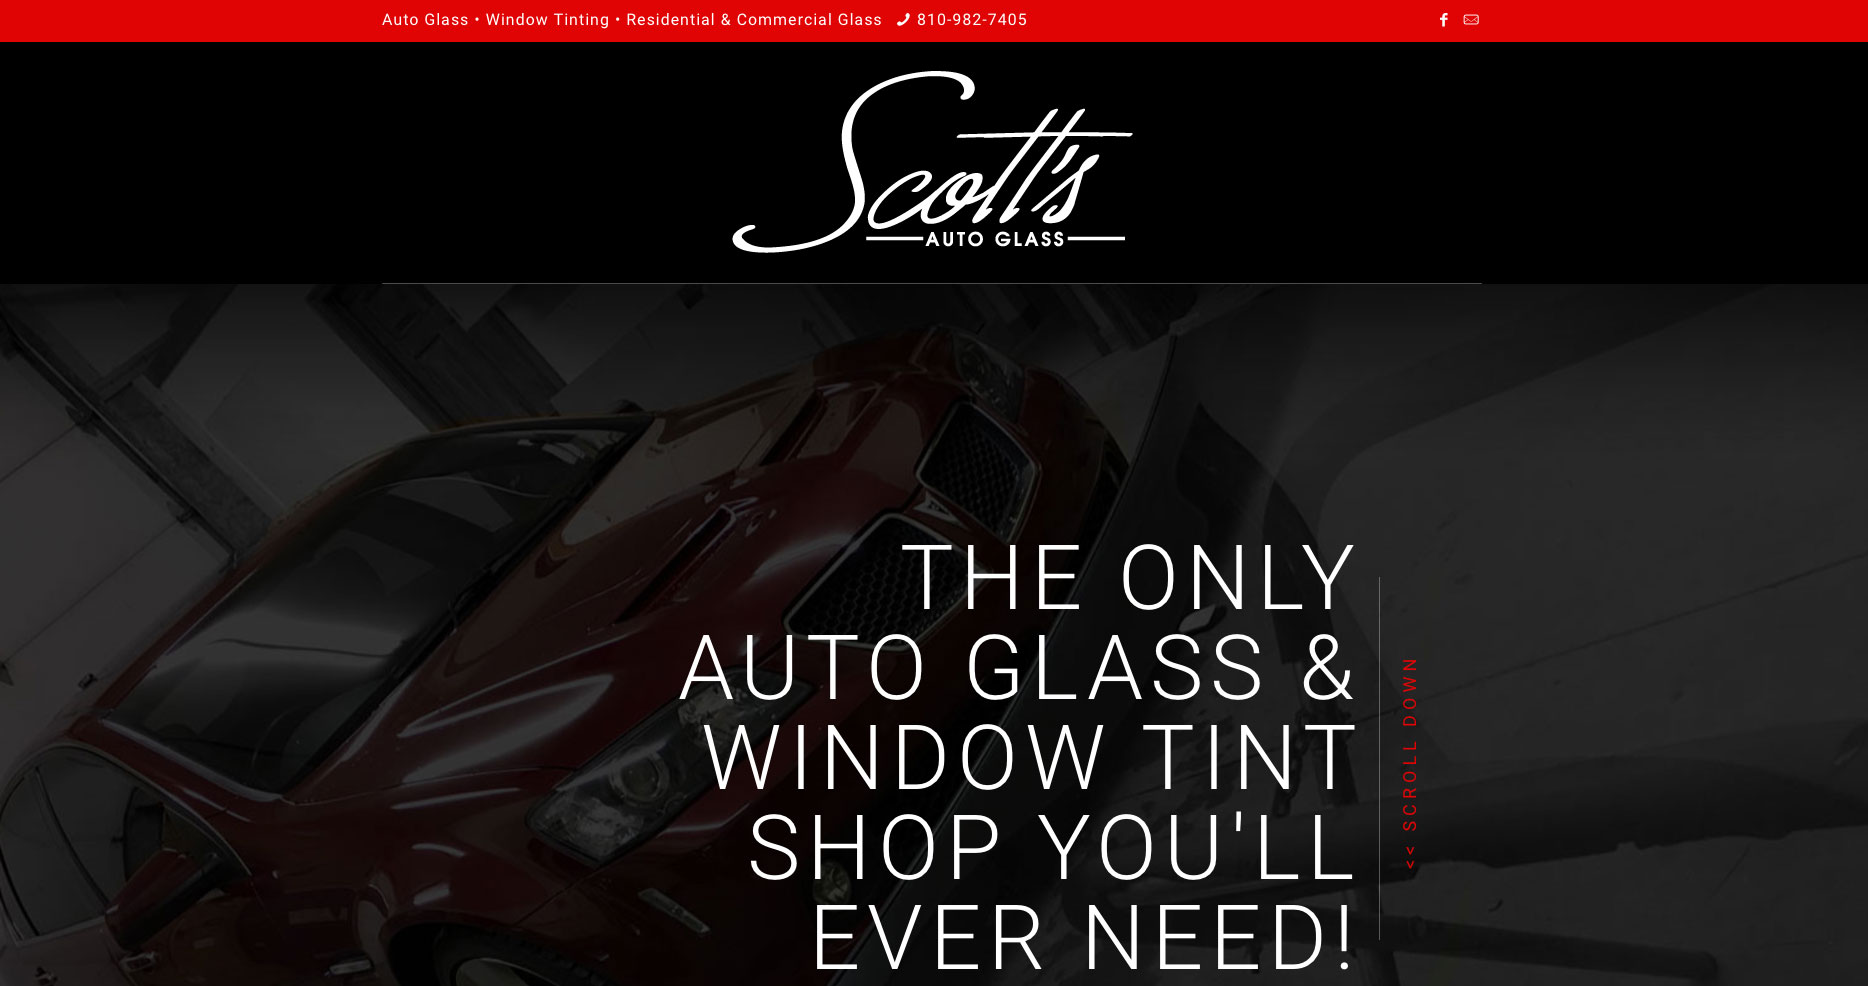 Scott's Auto Glass